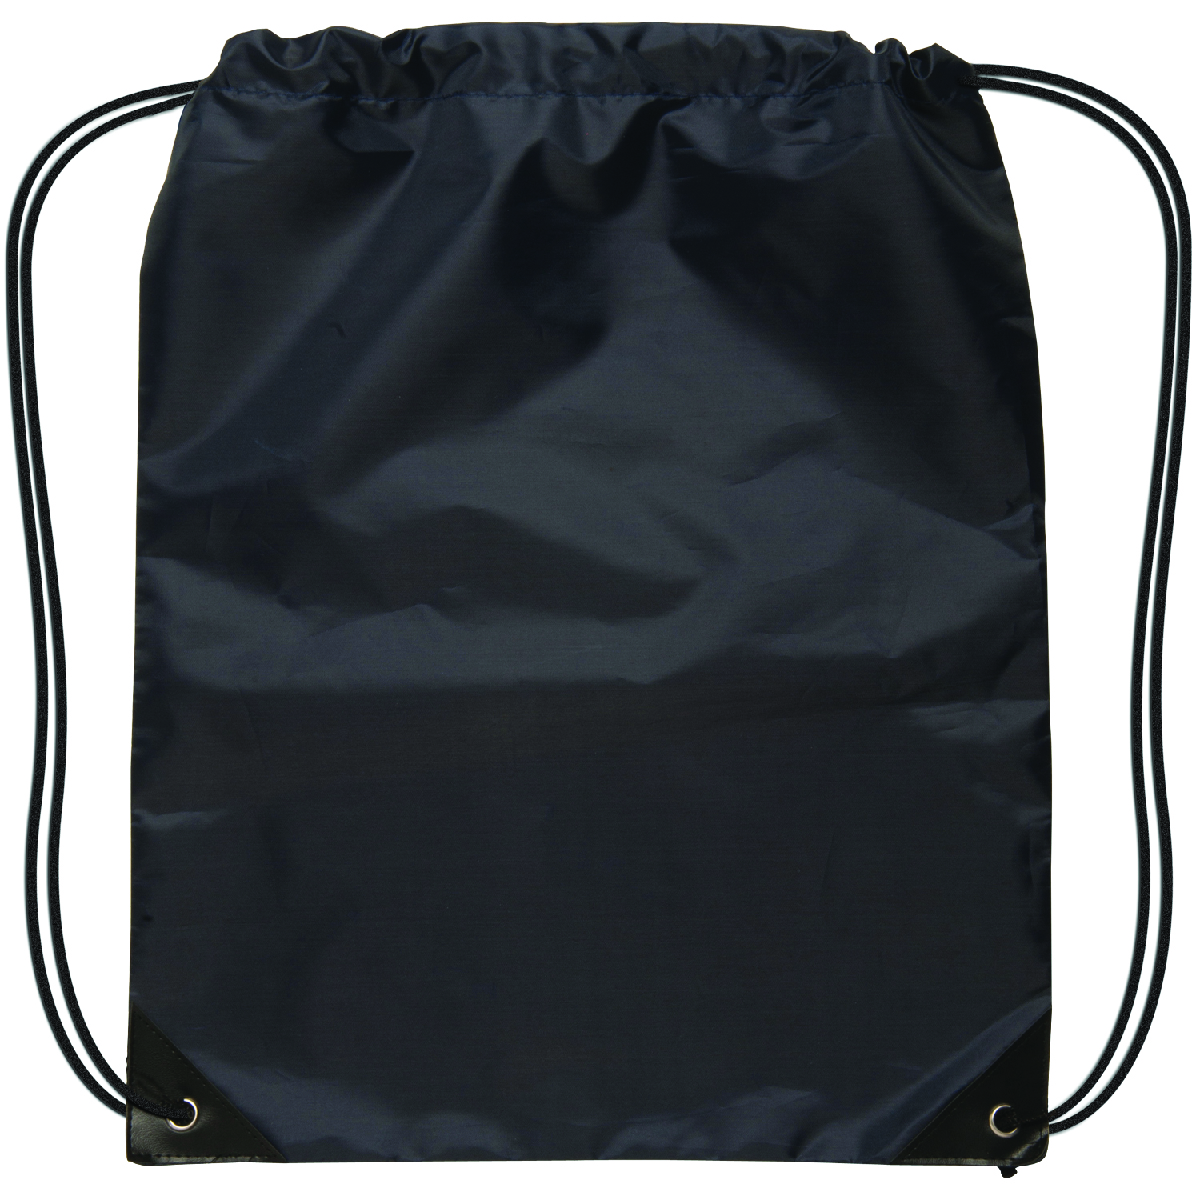 Black Small Drawstring Backpack